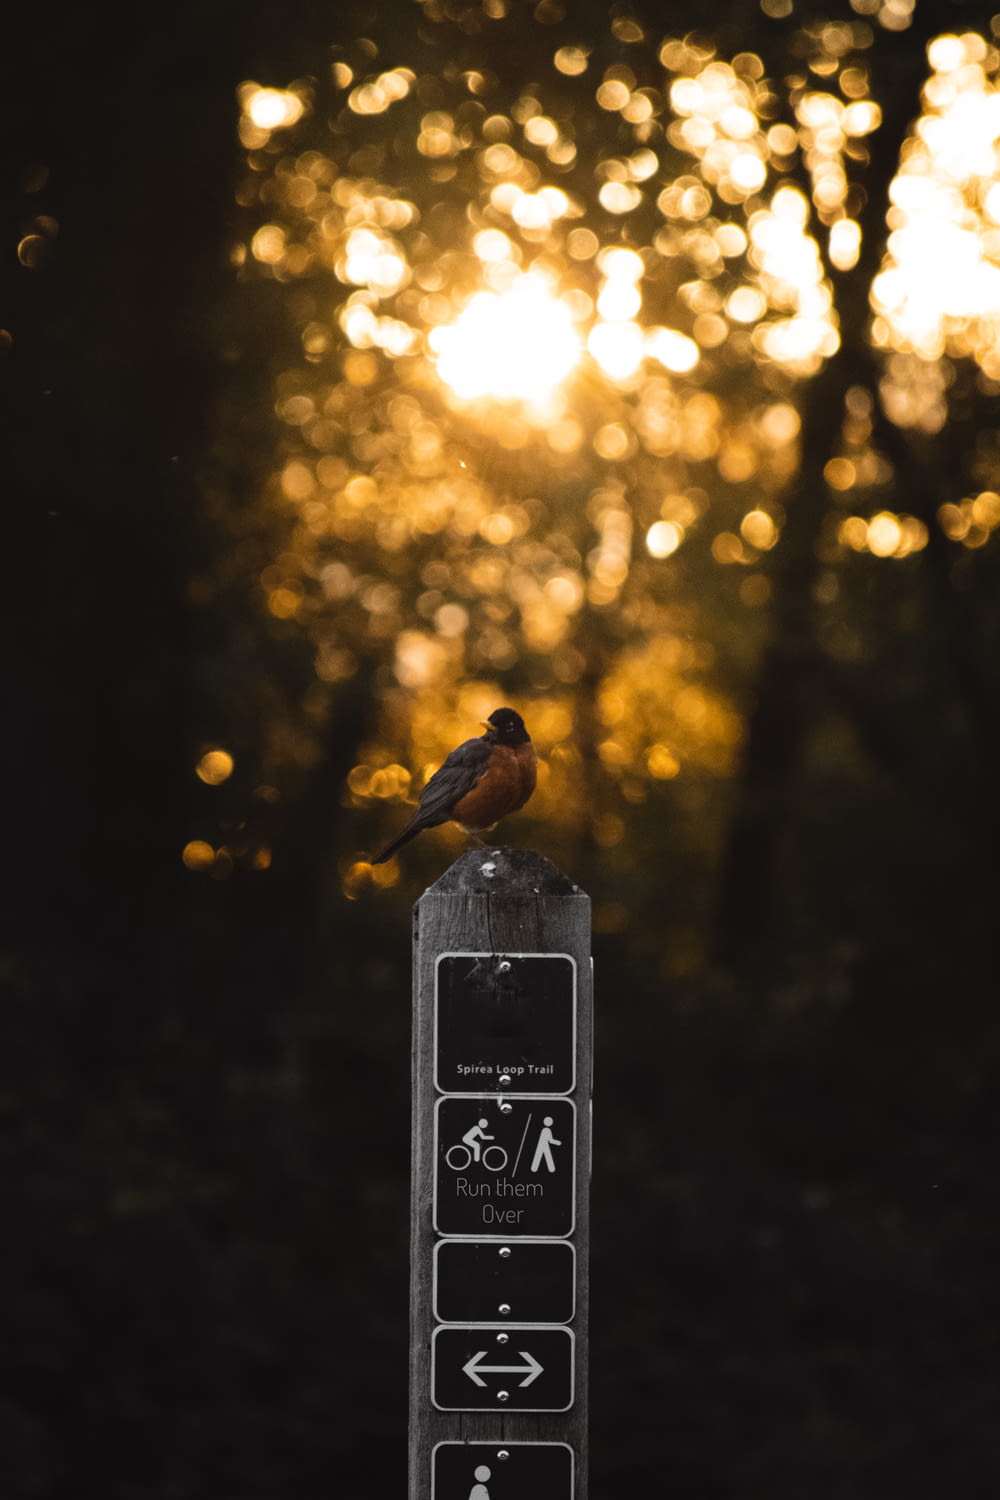 a bird on a parking meter